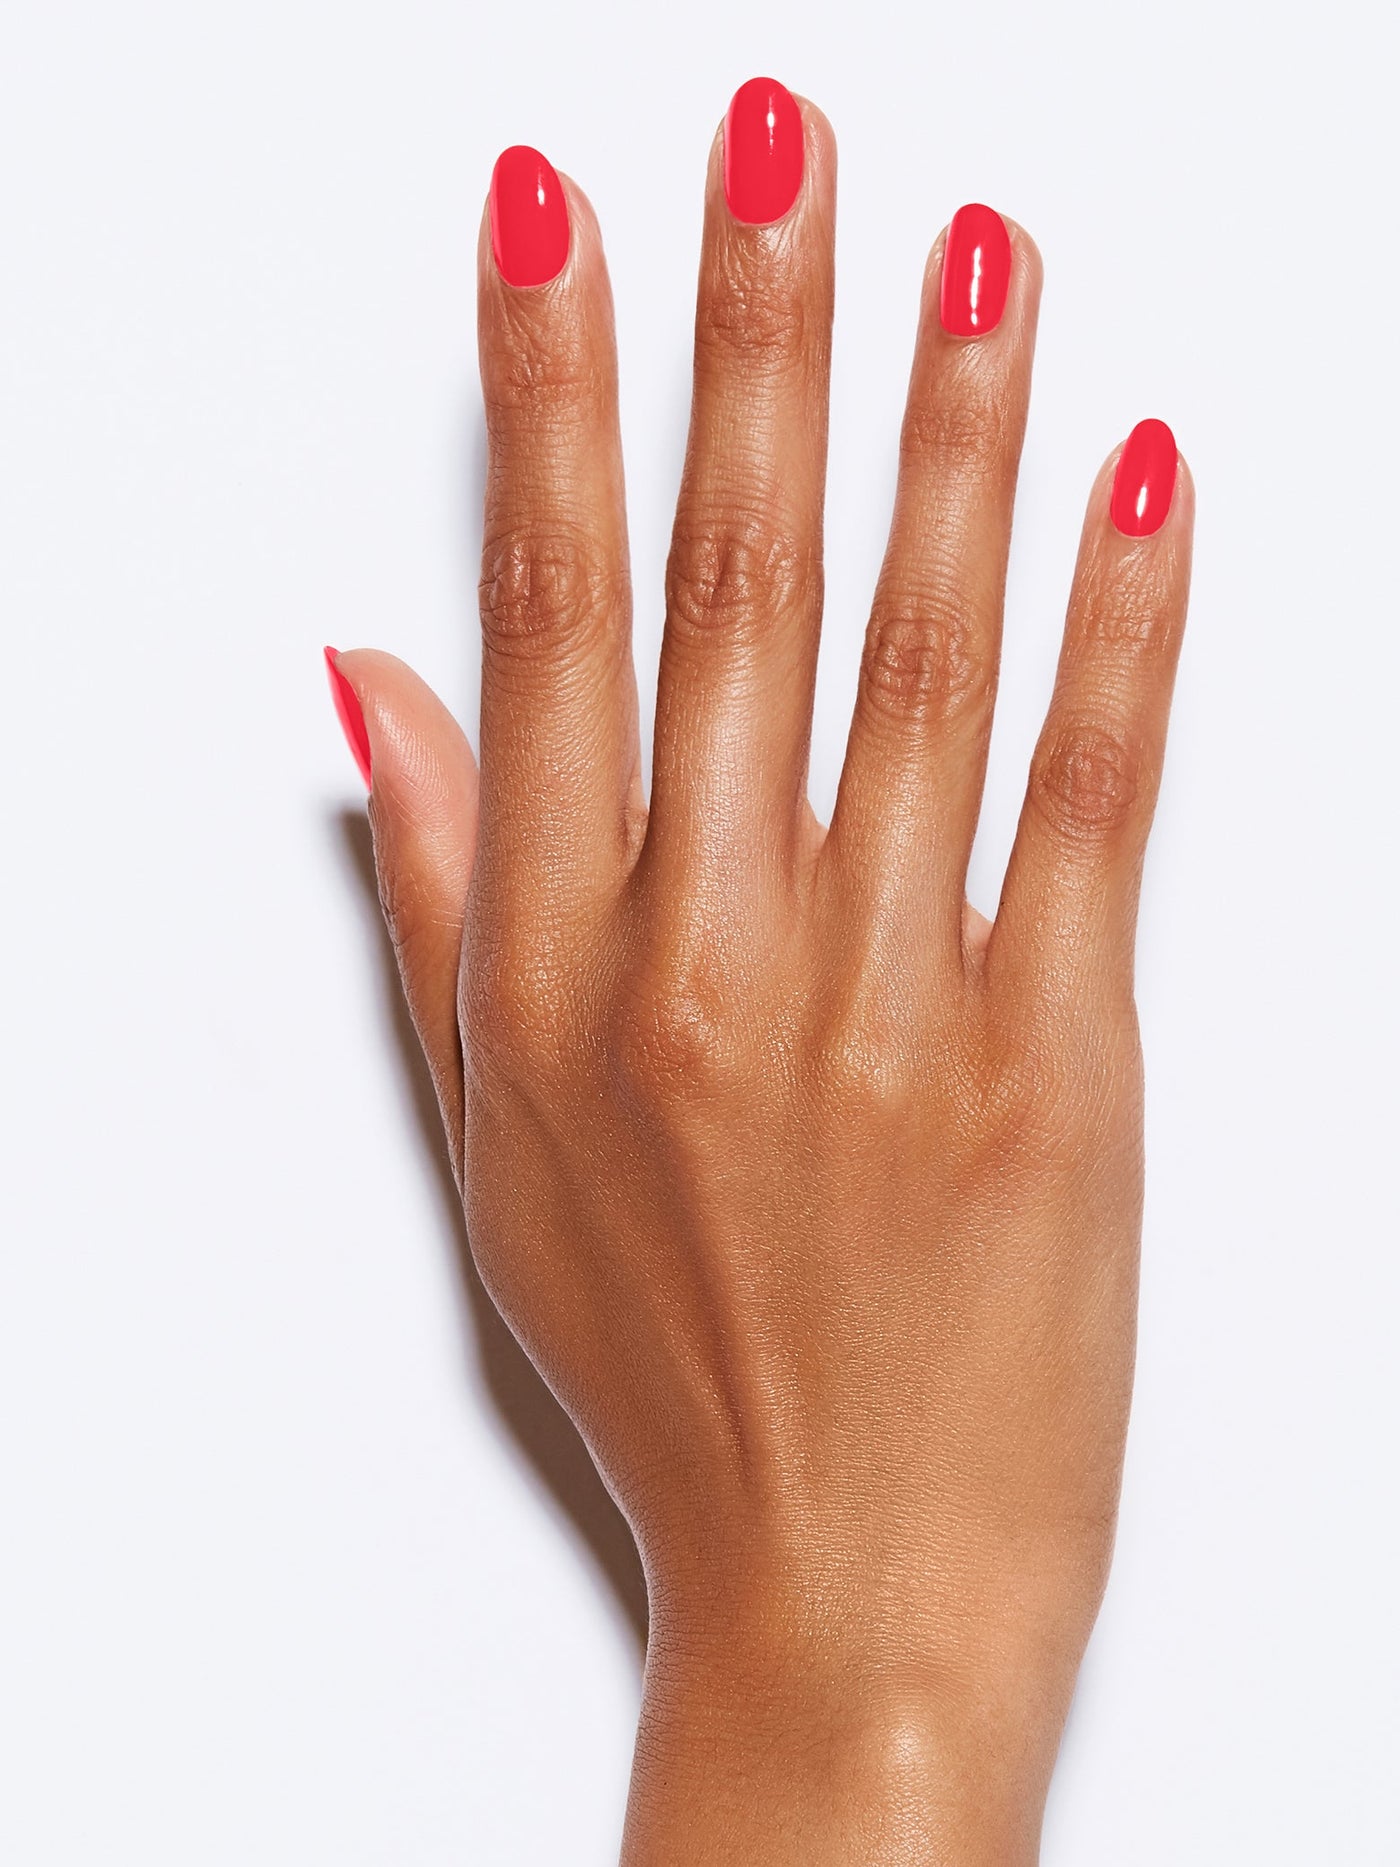 Neon red matte nails | Red matte nails, Matte nails, Nails